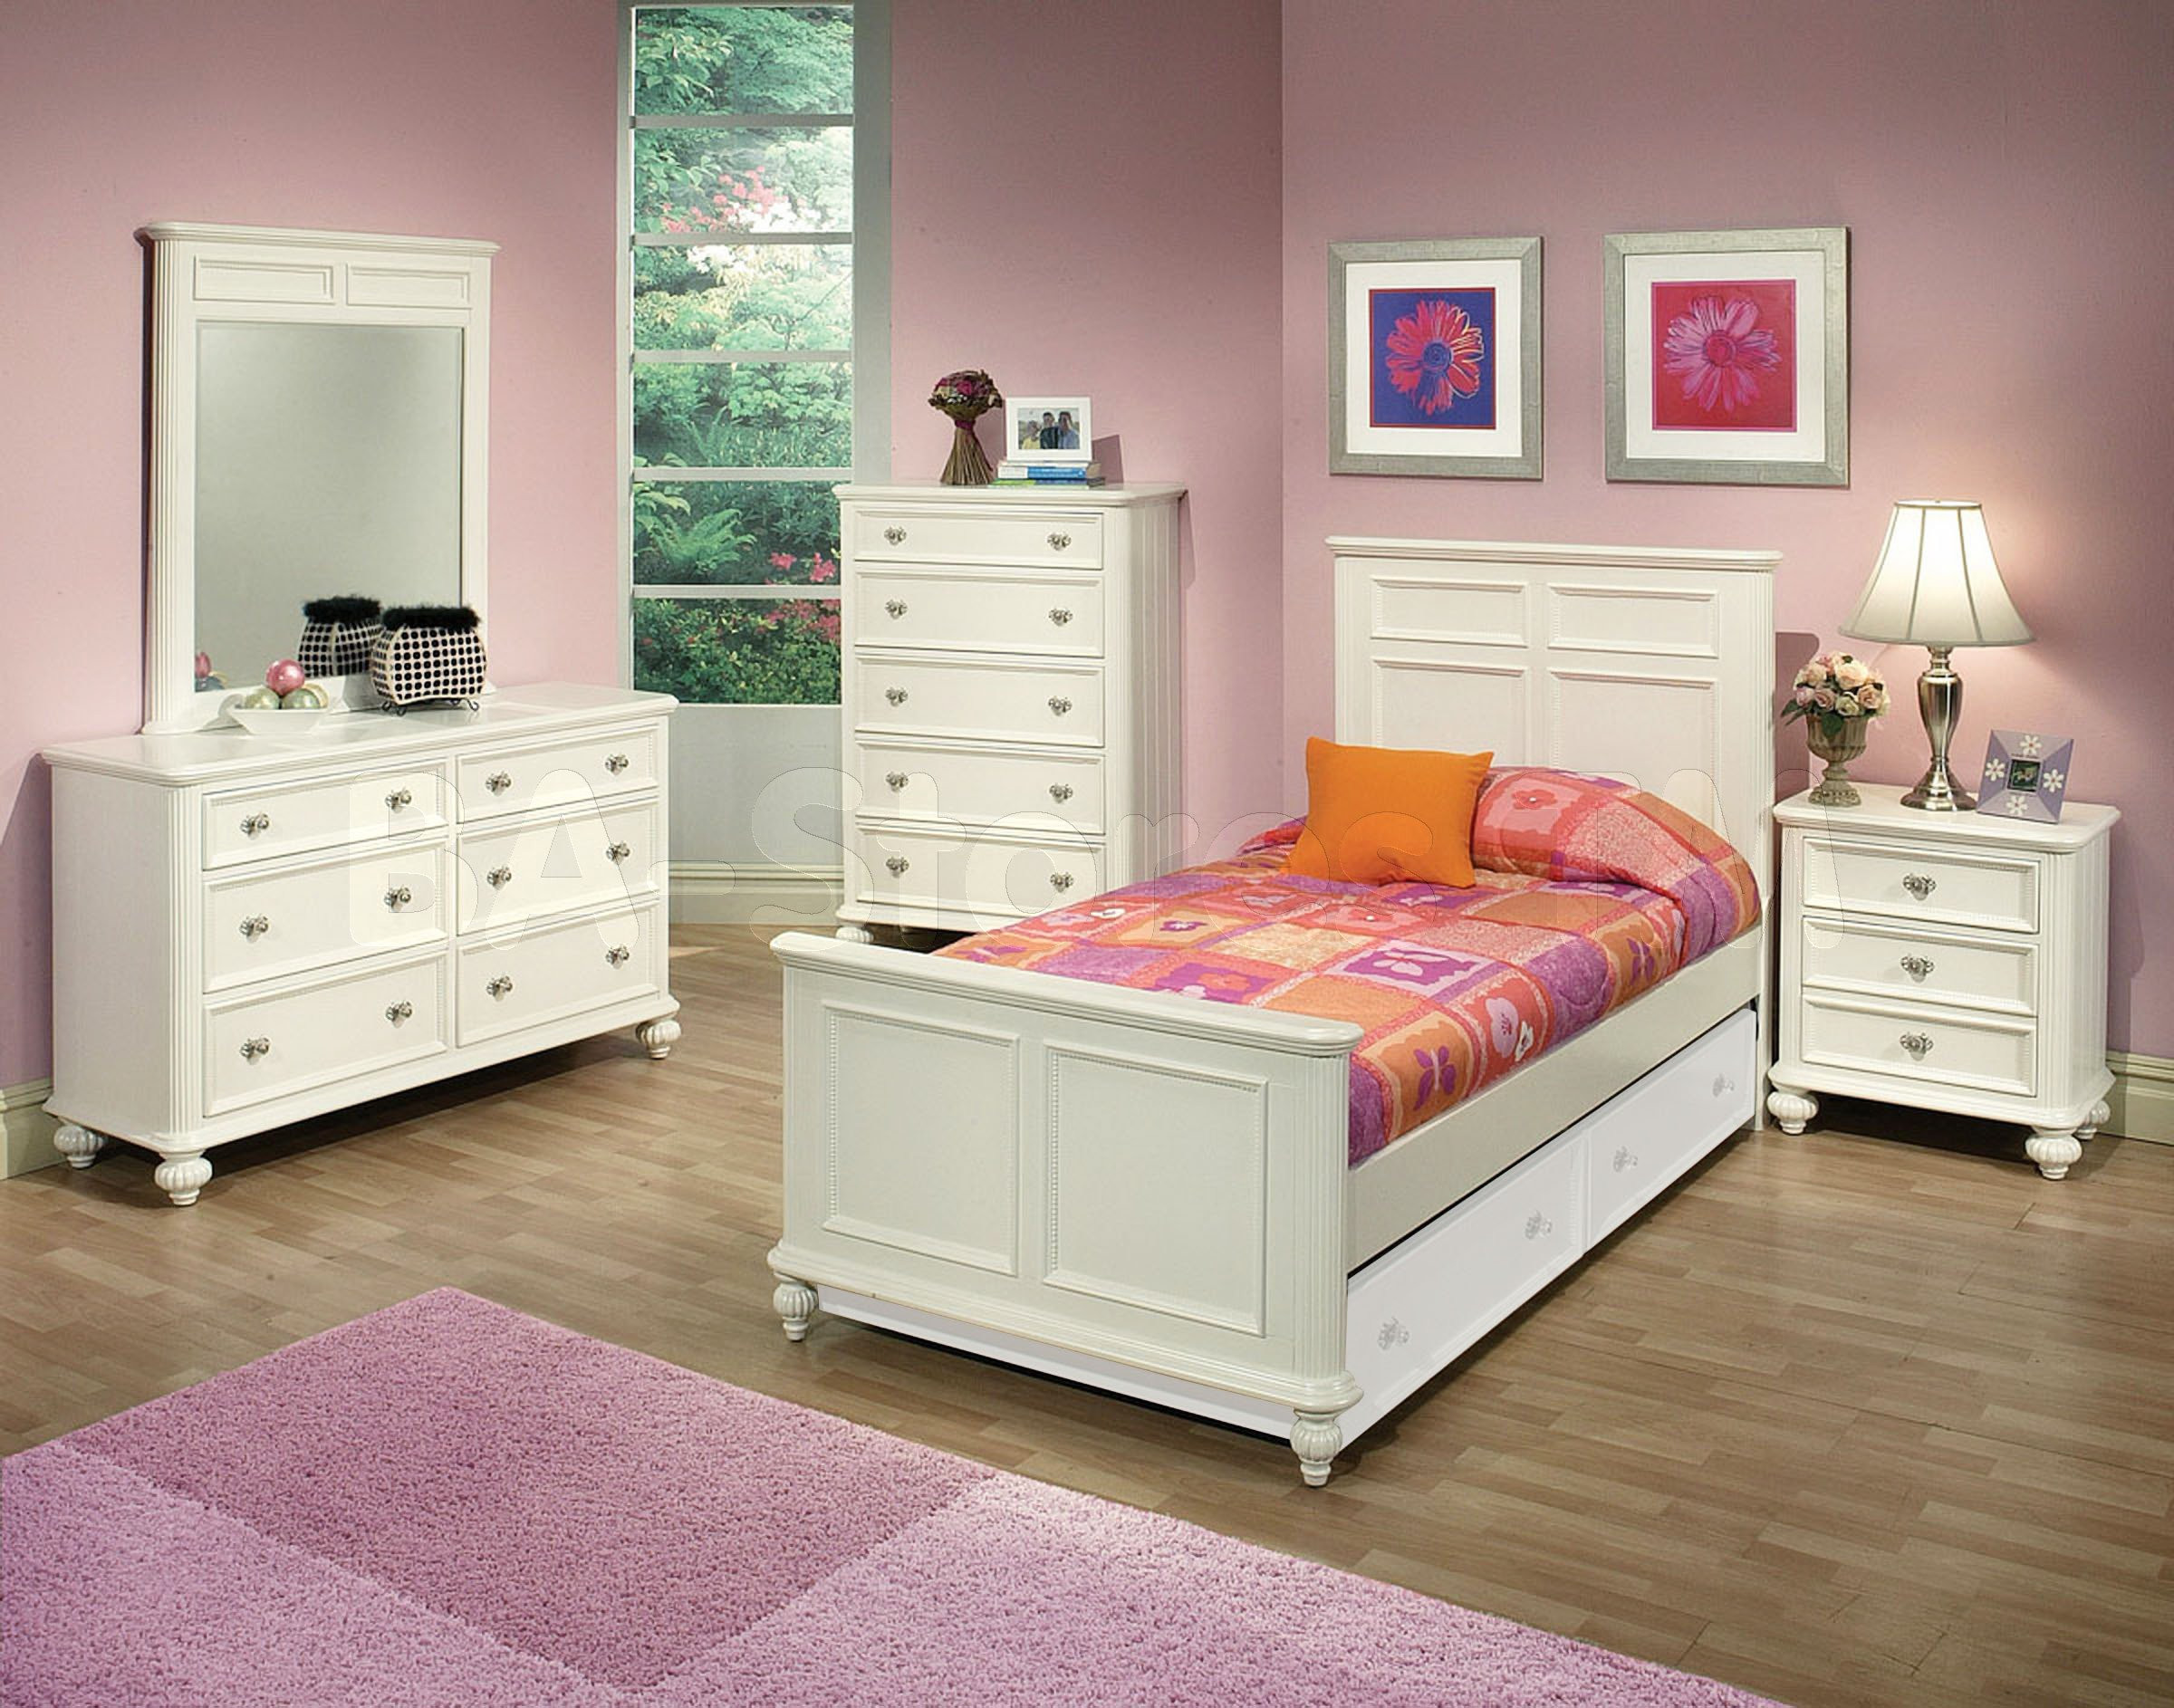 Kids Bedroom Sets
 Solid wood bedroom furniture for kids 20 tips for best